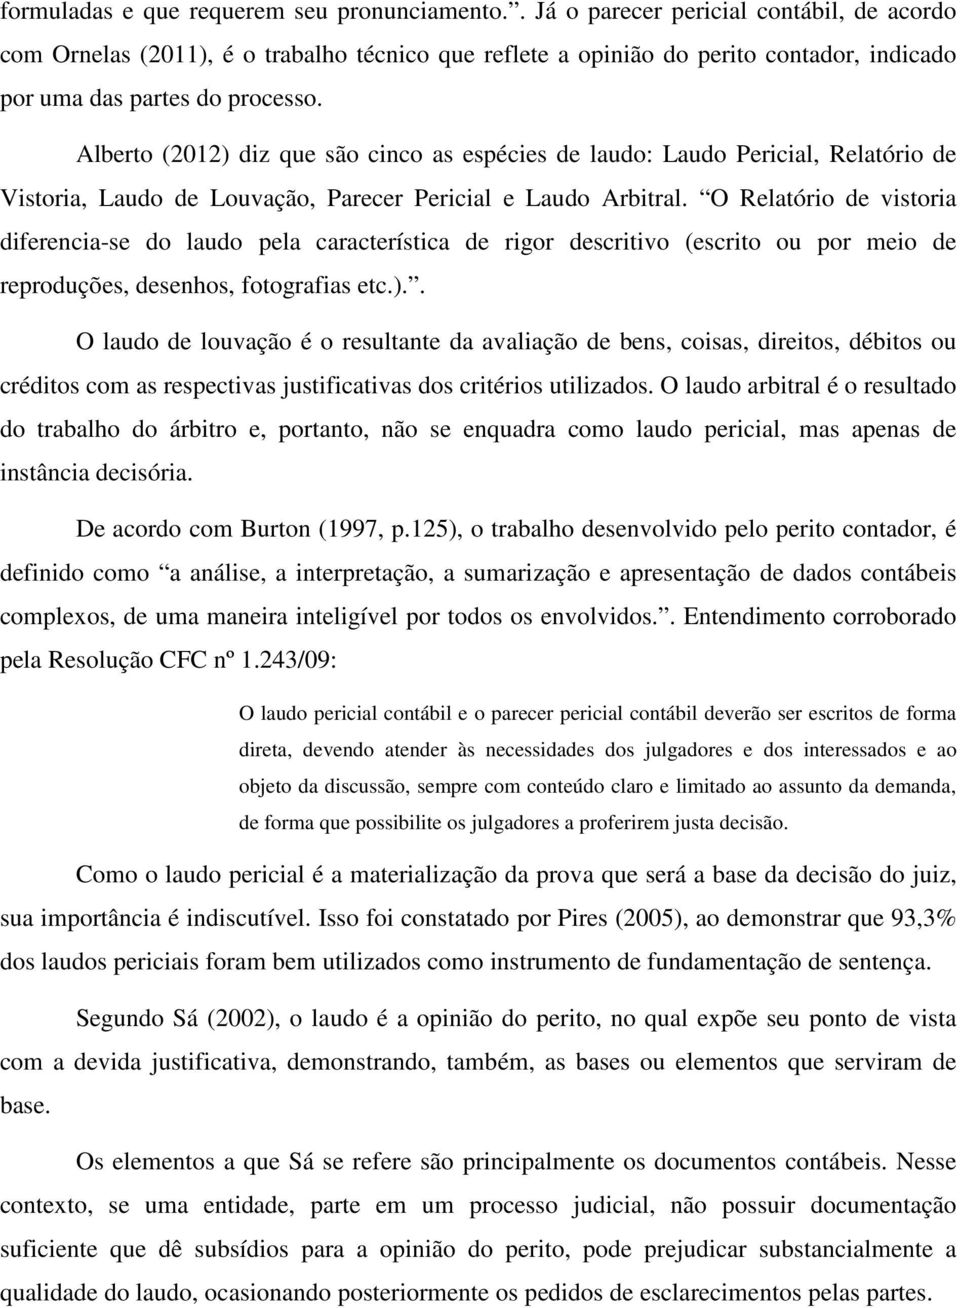 Alberto (2012) diz que são cinco as espécies de laudo: Laudo Pericial, Relatório de Vistoria, Laudo de Louvação, Parecer Pericial e Laudo Arbitral.